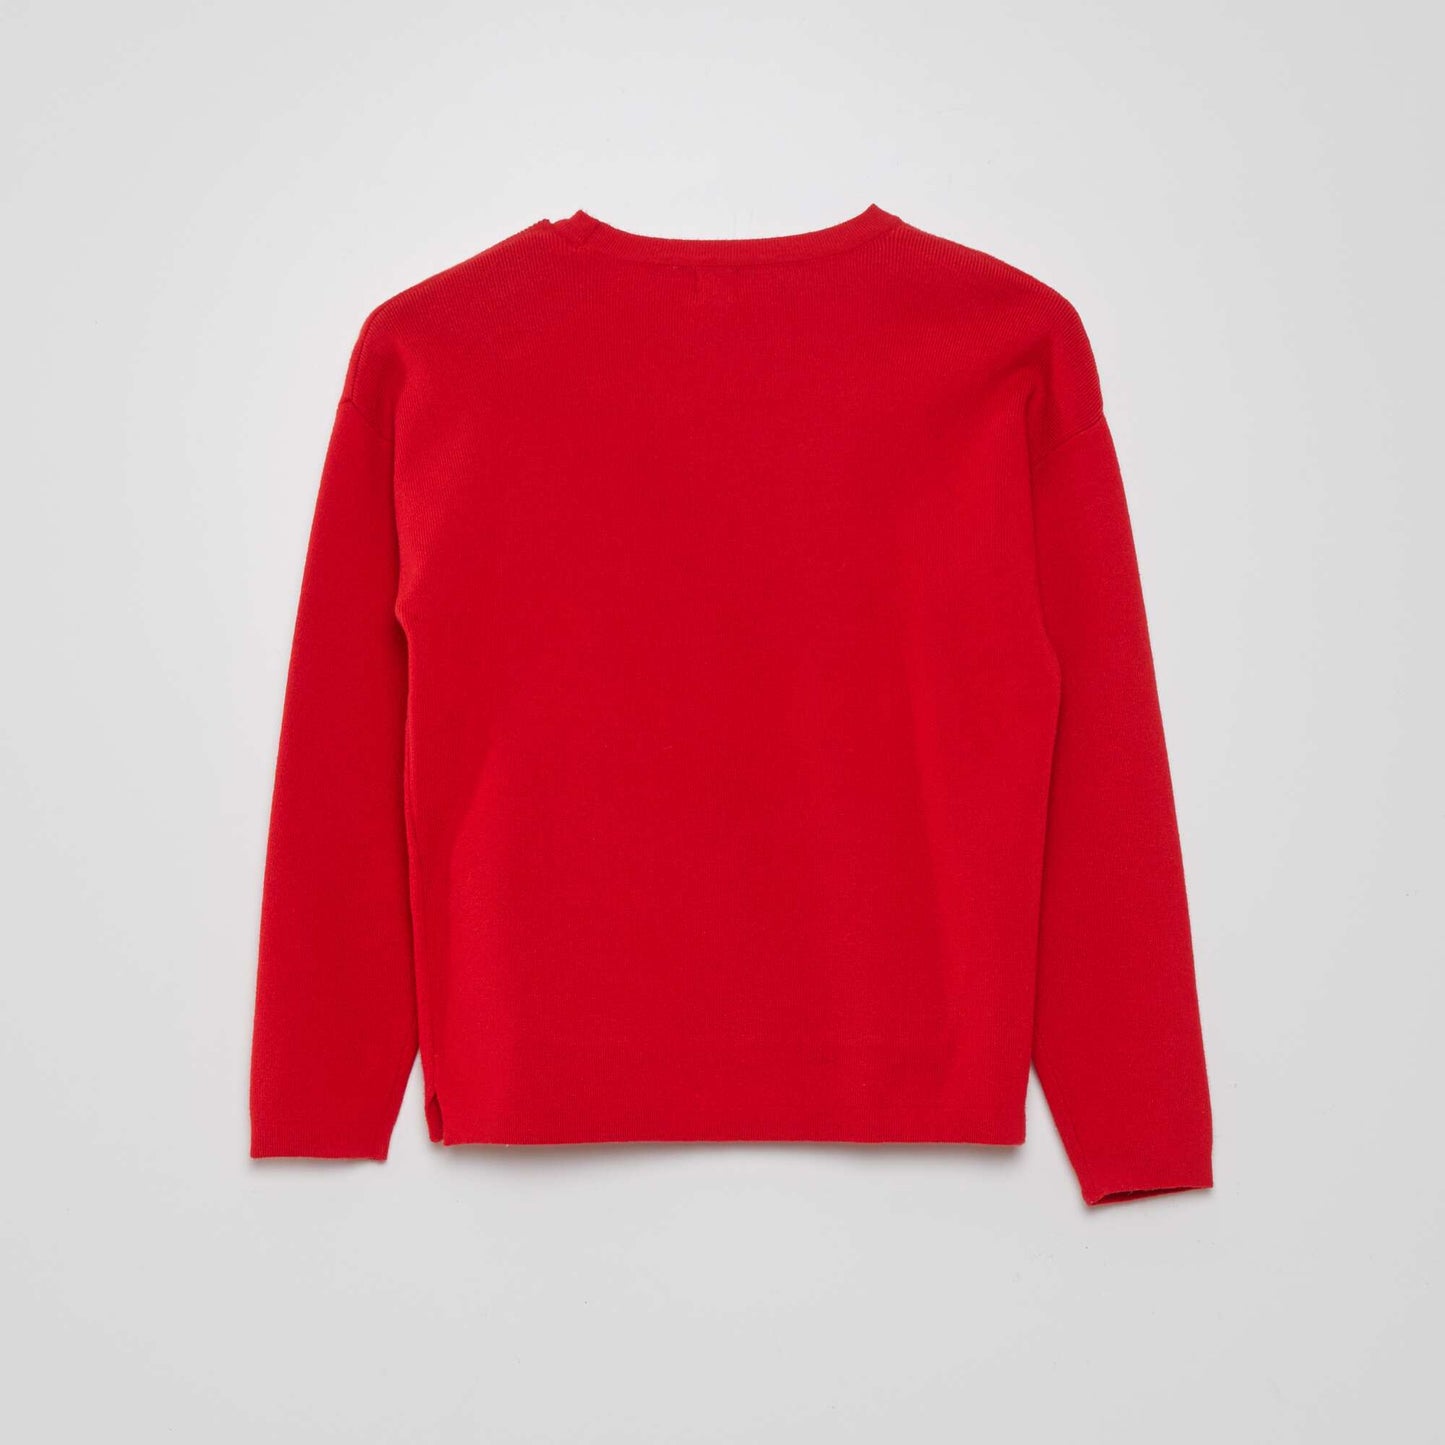 Round-neck knit jumper red